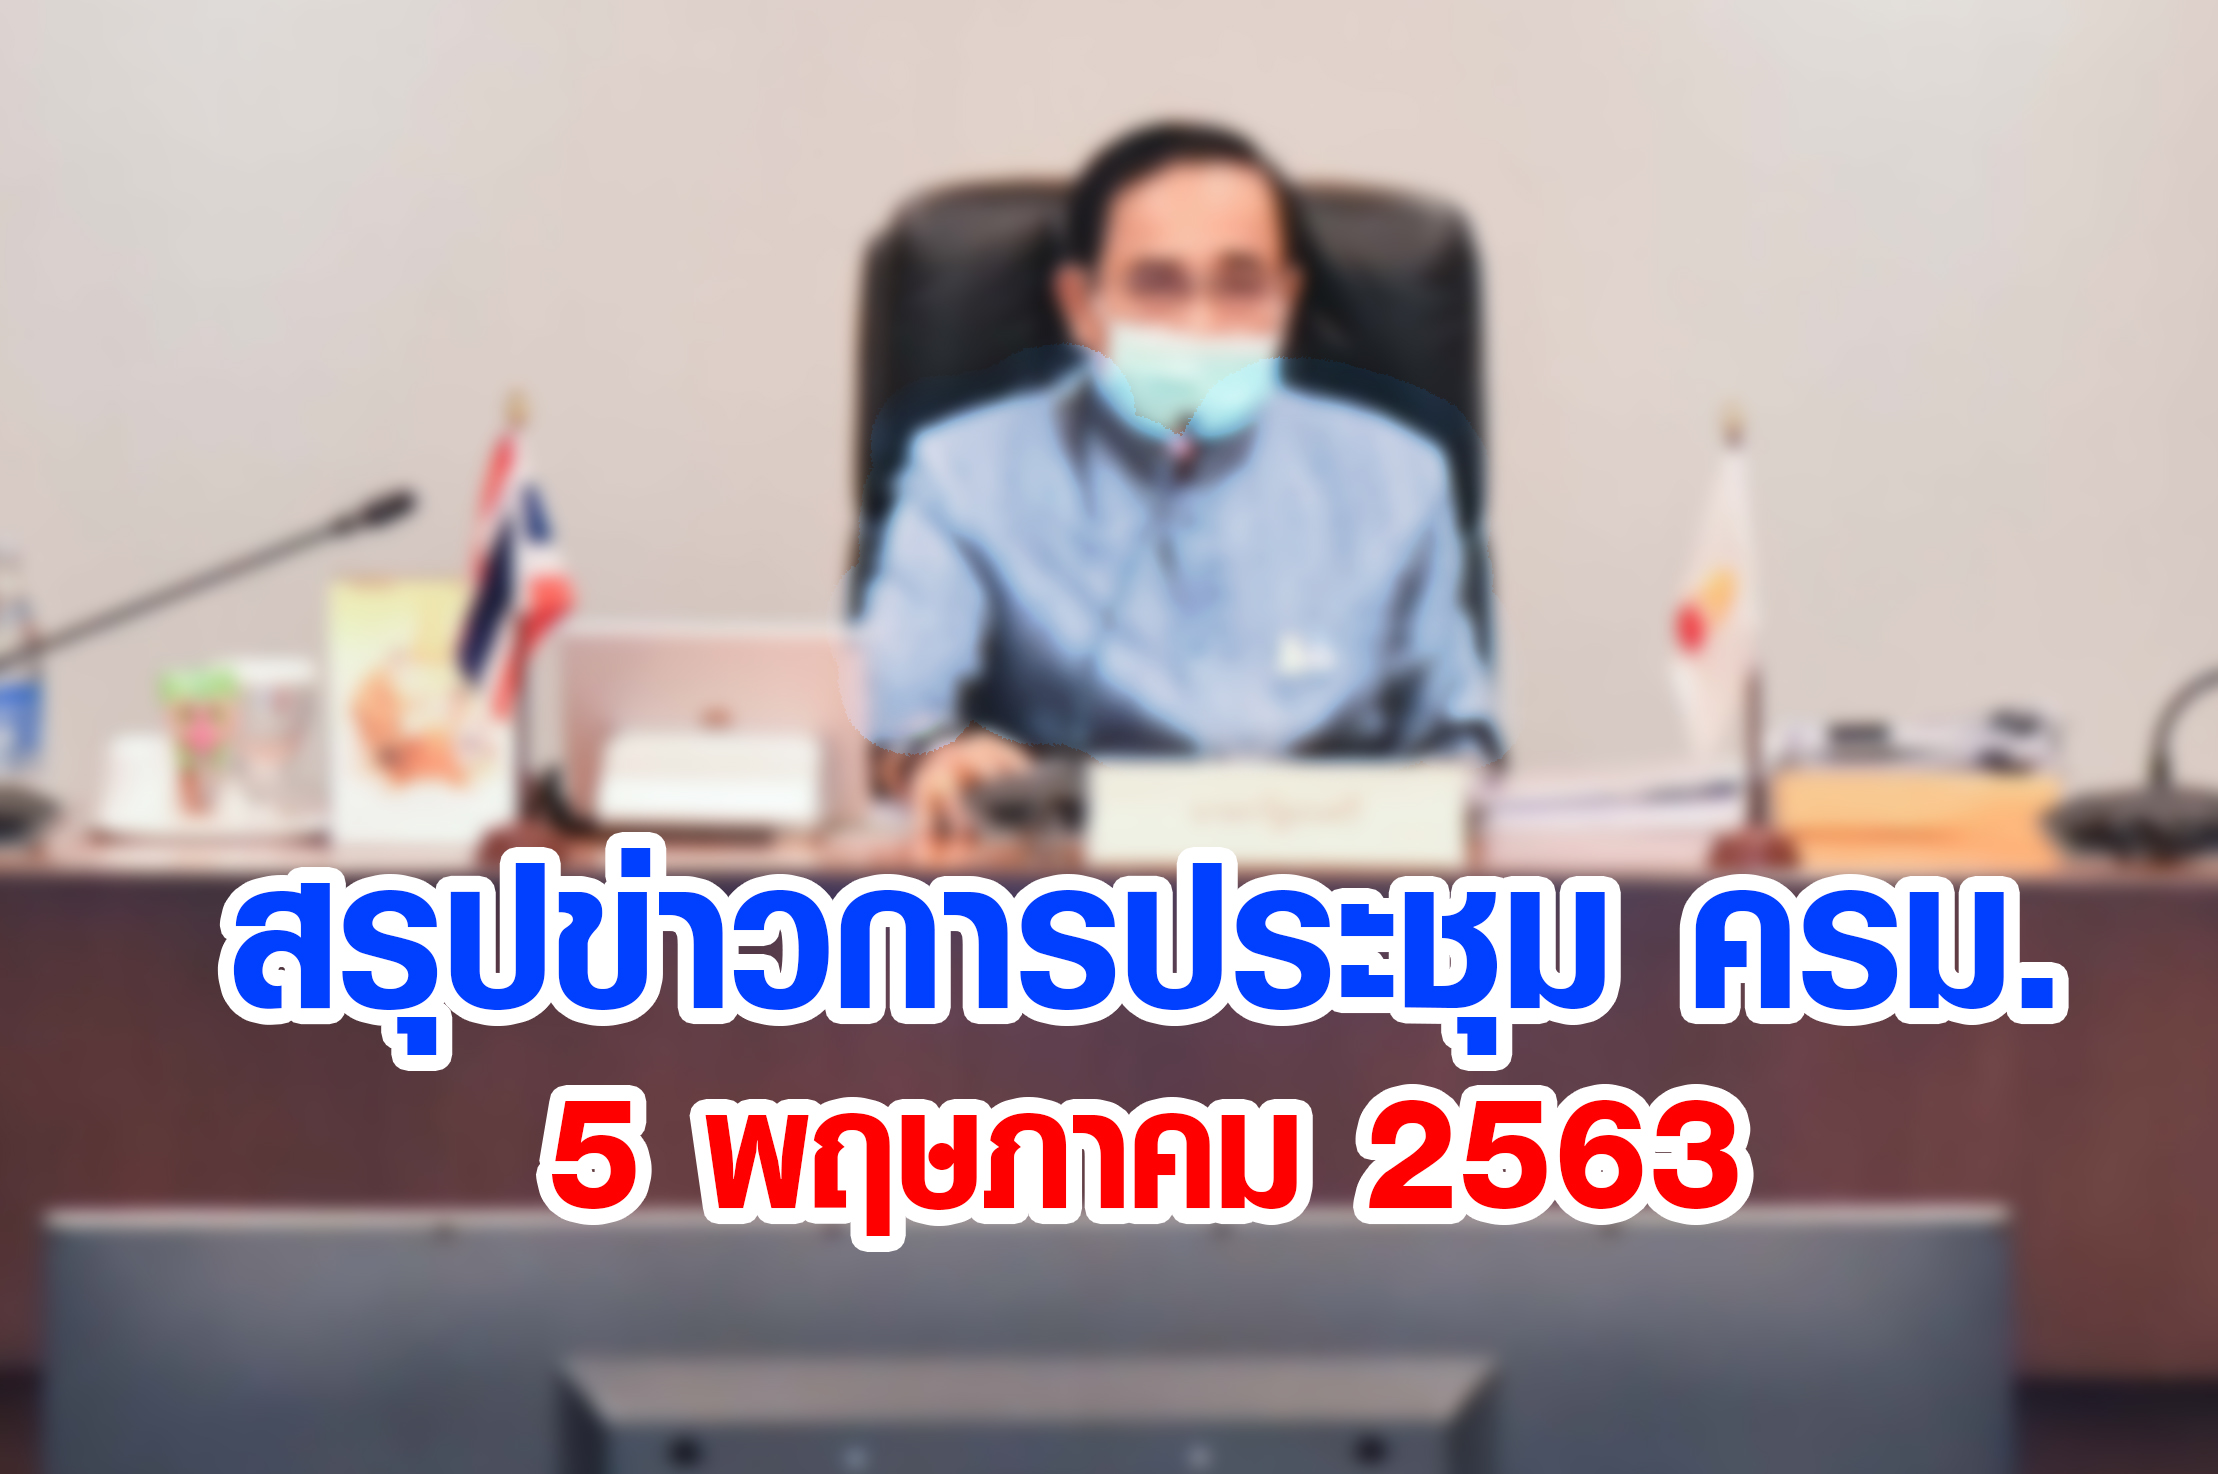 สรุปข่าวการประชุมคณะรัฐมนตรี 5 พ.ค. 2563